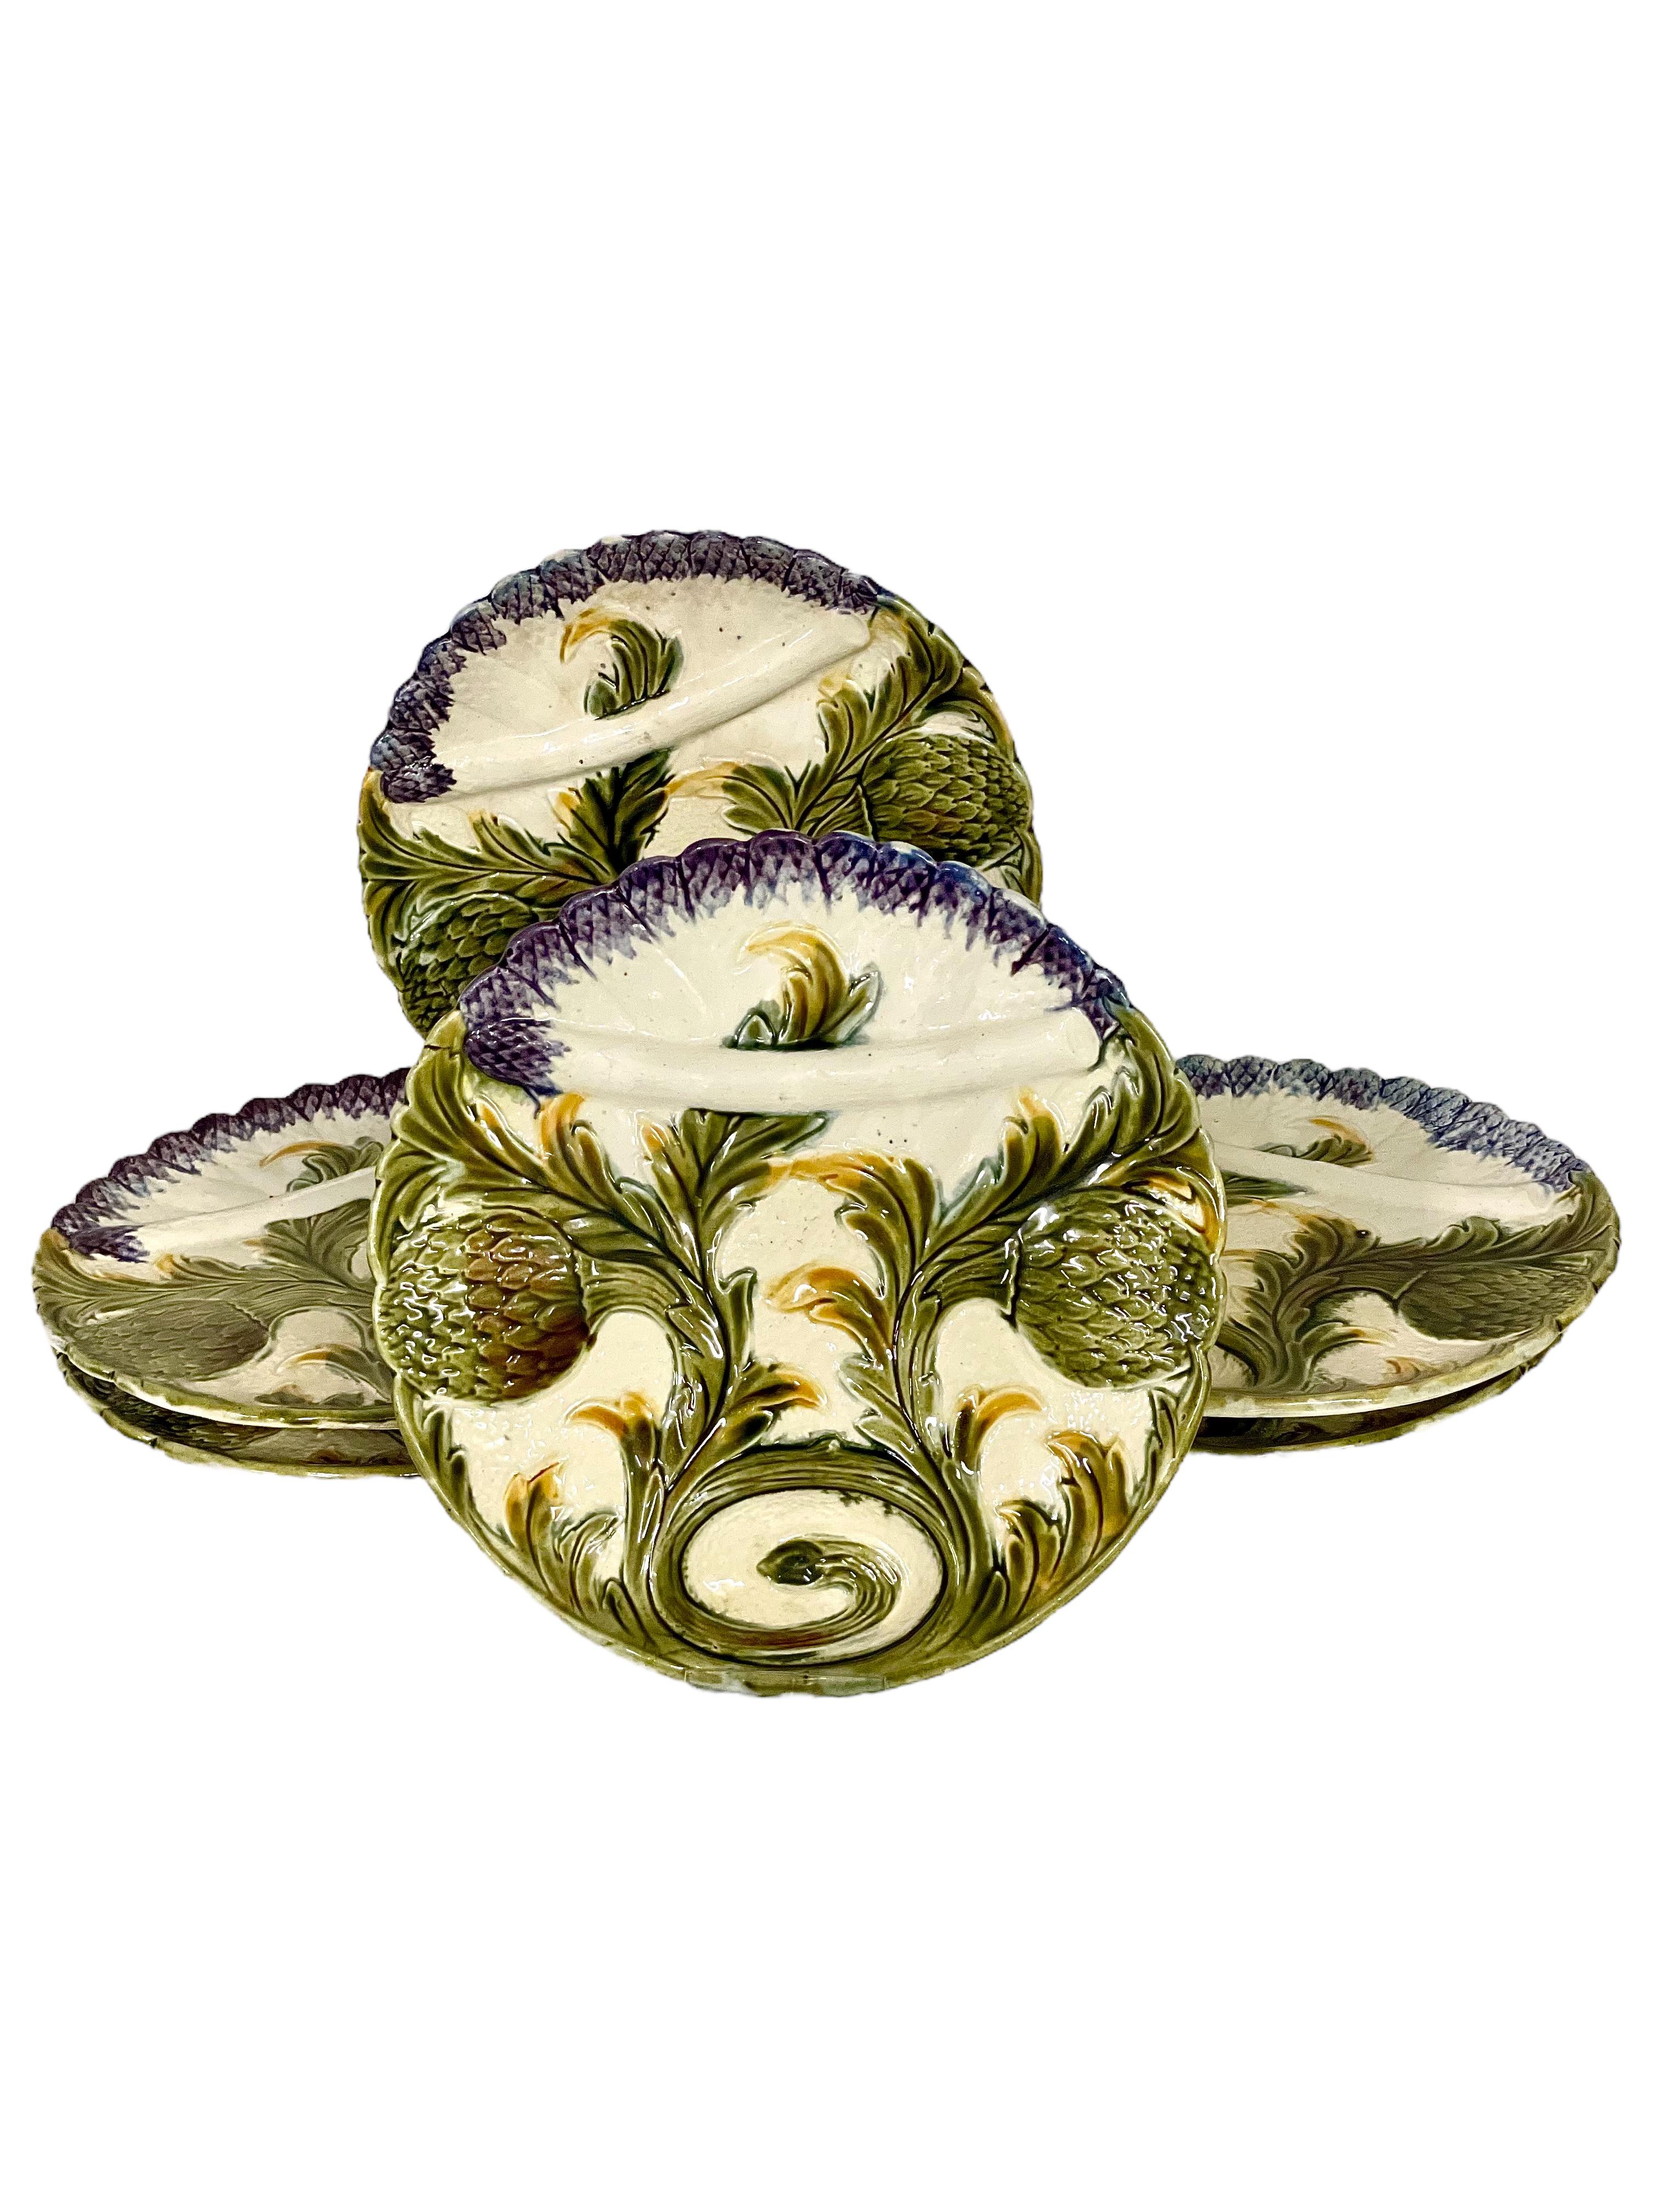 Un ensemble très inhabituel et magnifique de six assiettes de service à asperges en majolique de Barbotine, présentant un décor texturé typique en 